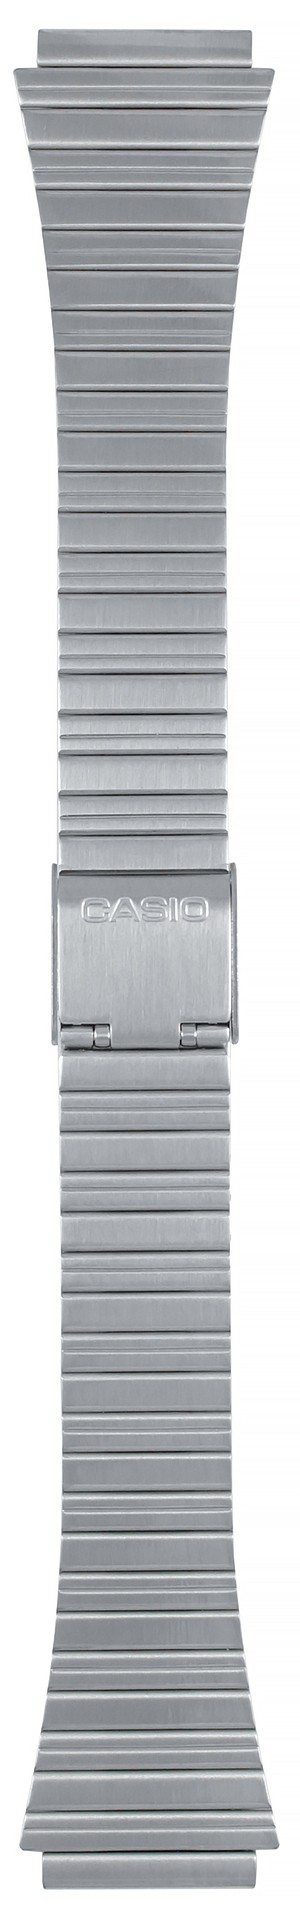 Браслет наручных часов металлический Casio DB-520A